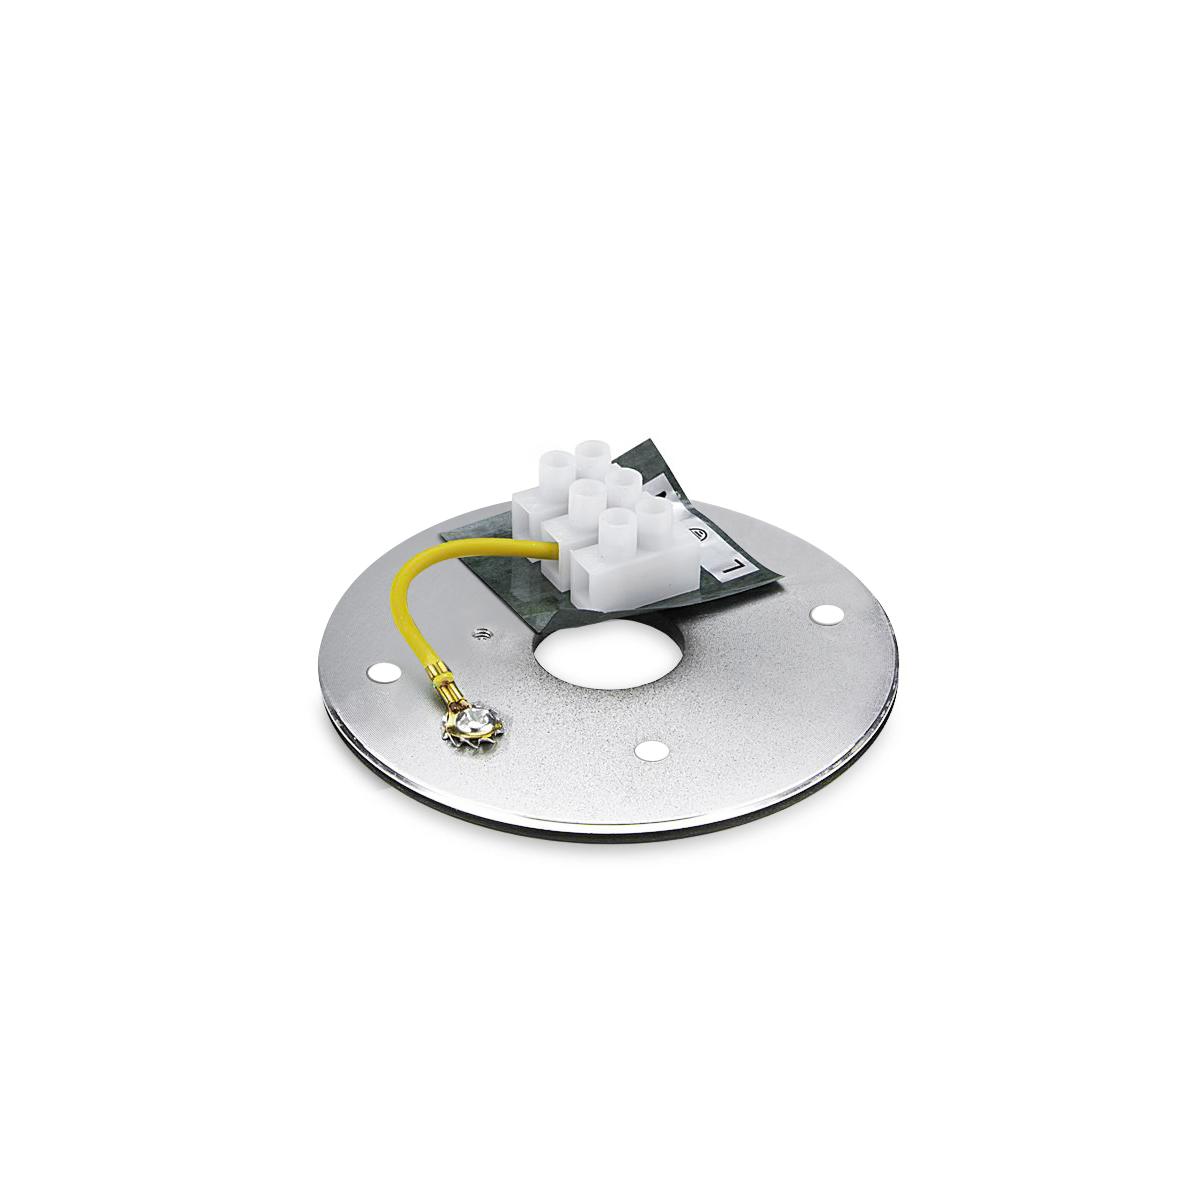 Flacher Aufbaustrahler weiß eckig schwenkbar Deckenleuchte - LED Leuchtmittel:  3W RGB+Warmweiß 230V dimmbar 60°